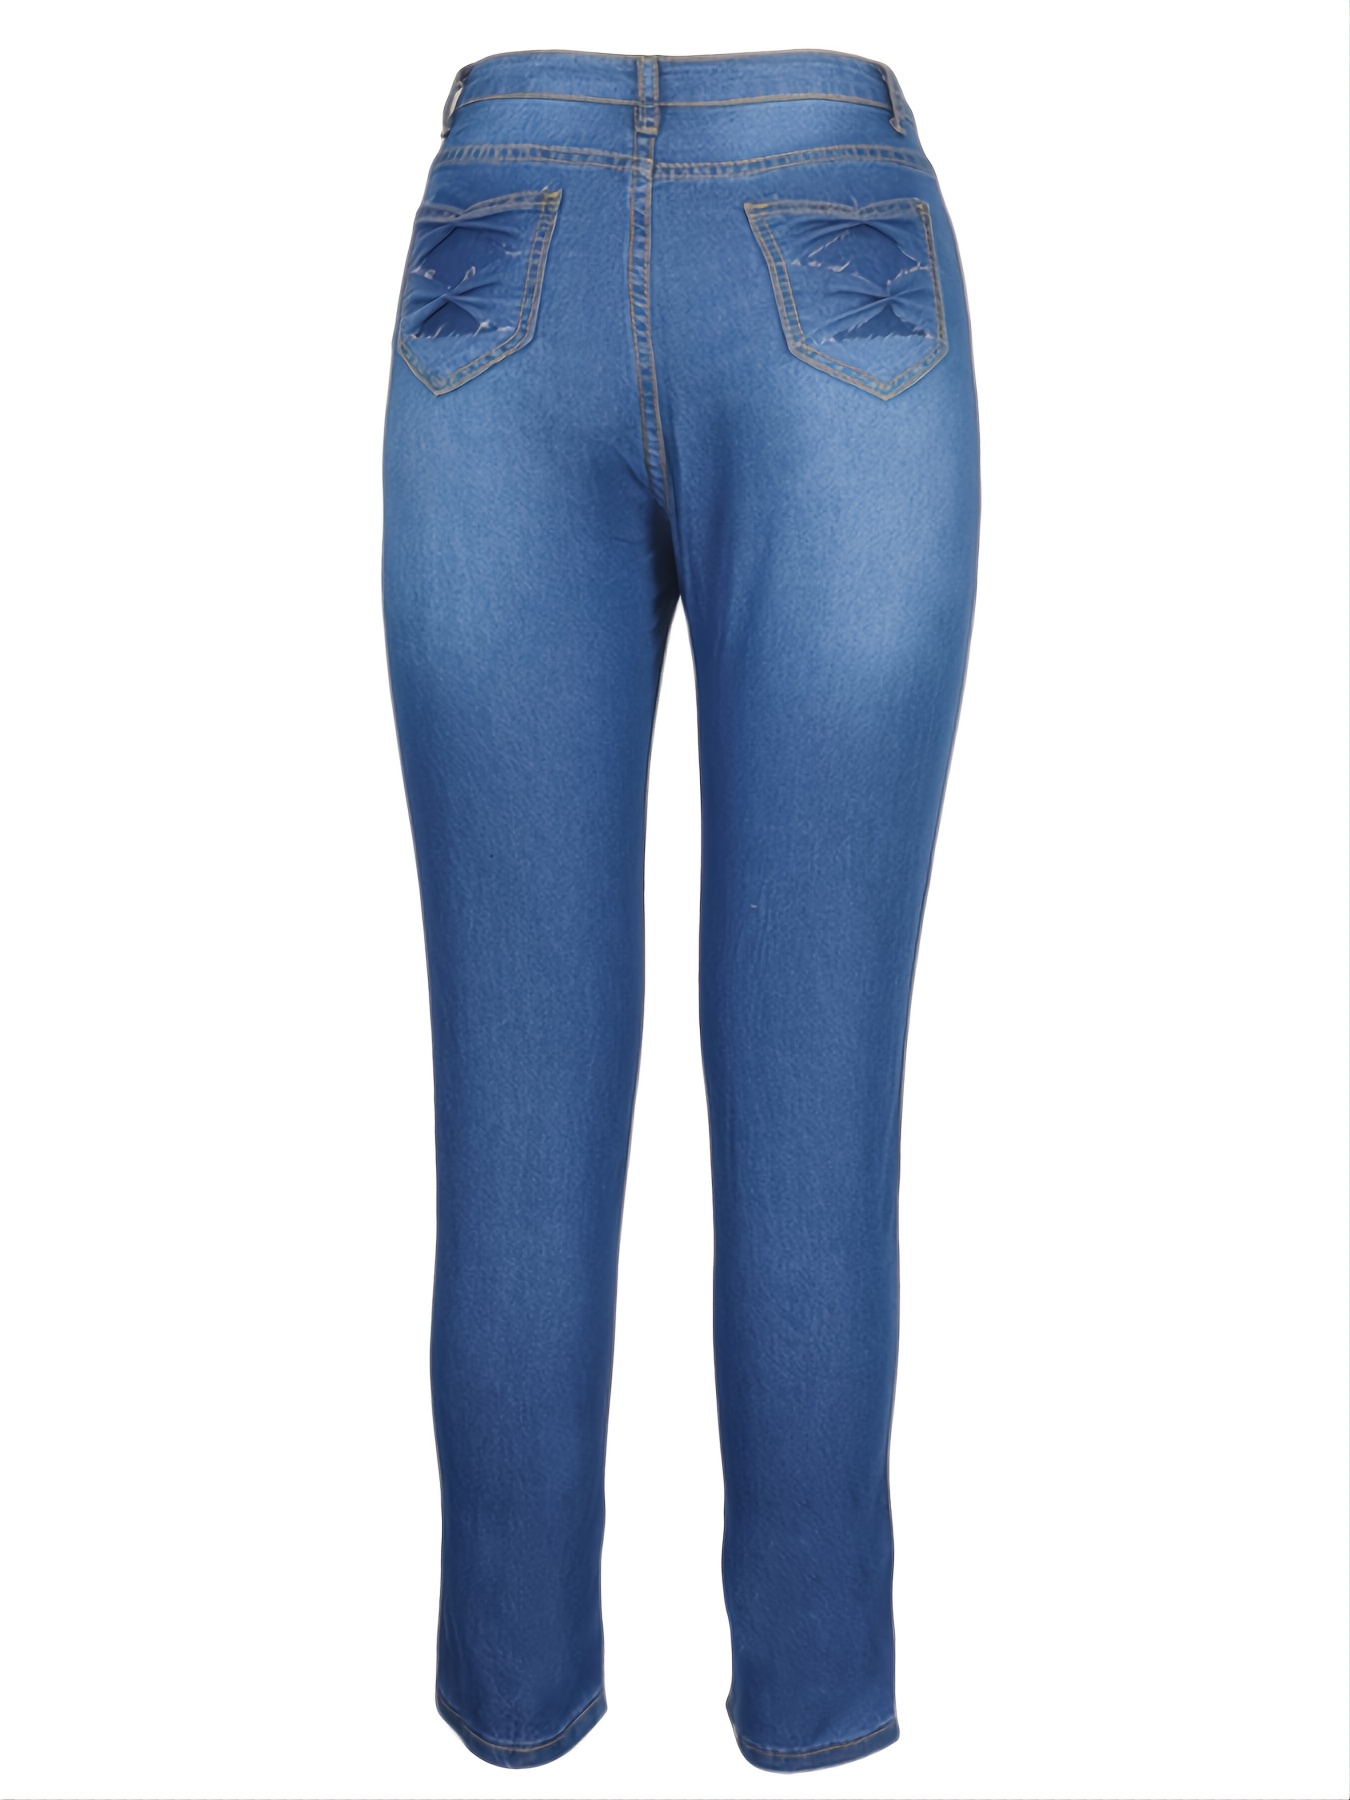 Jeans Ajustados Elásticos Mujer Pantalones Mezclilla Botones - Temu